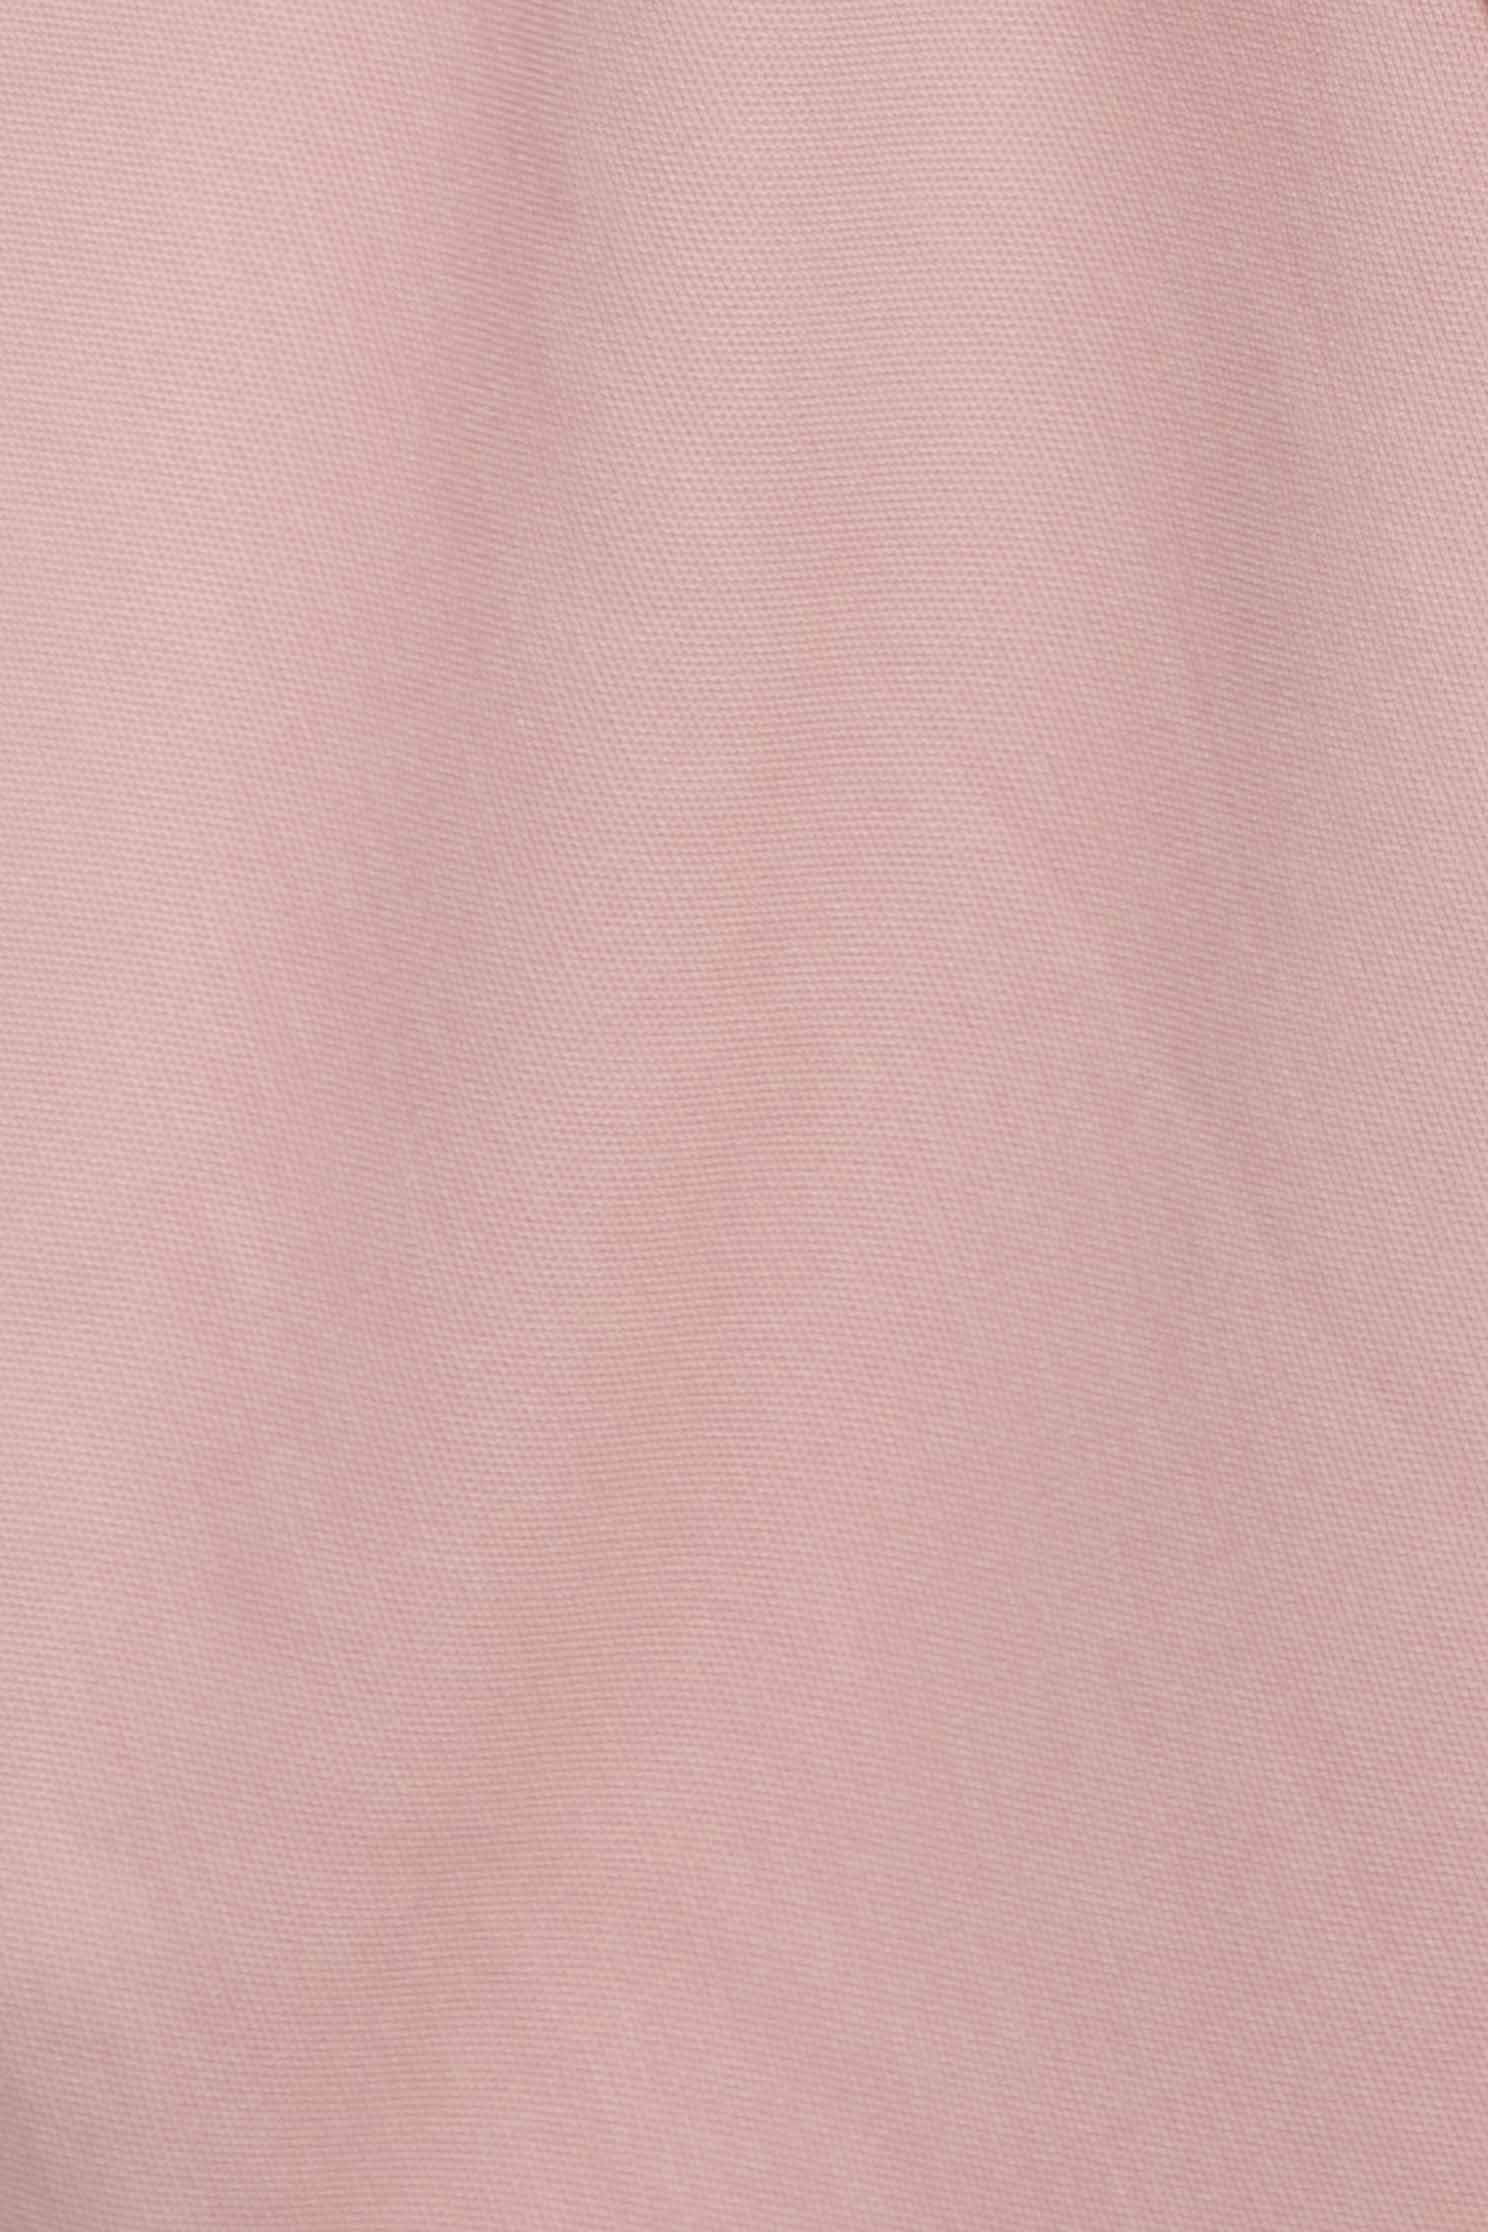 玫粉色木耳袖口短洋裝玫粉色木耳袖口短洋裝,一般洋裝,人氣商品,春夏穿搭,花花世界,荷葉,蝴蝶結